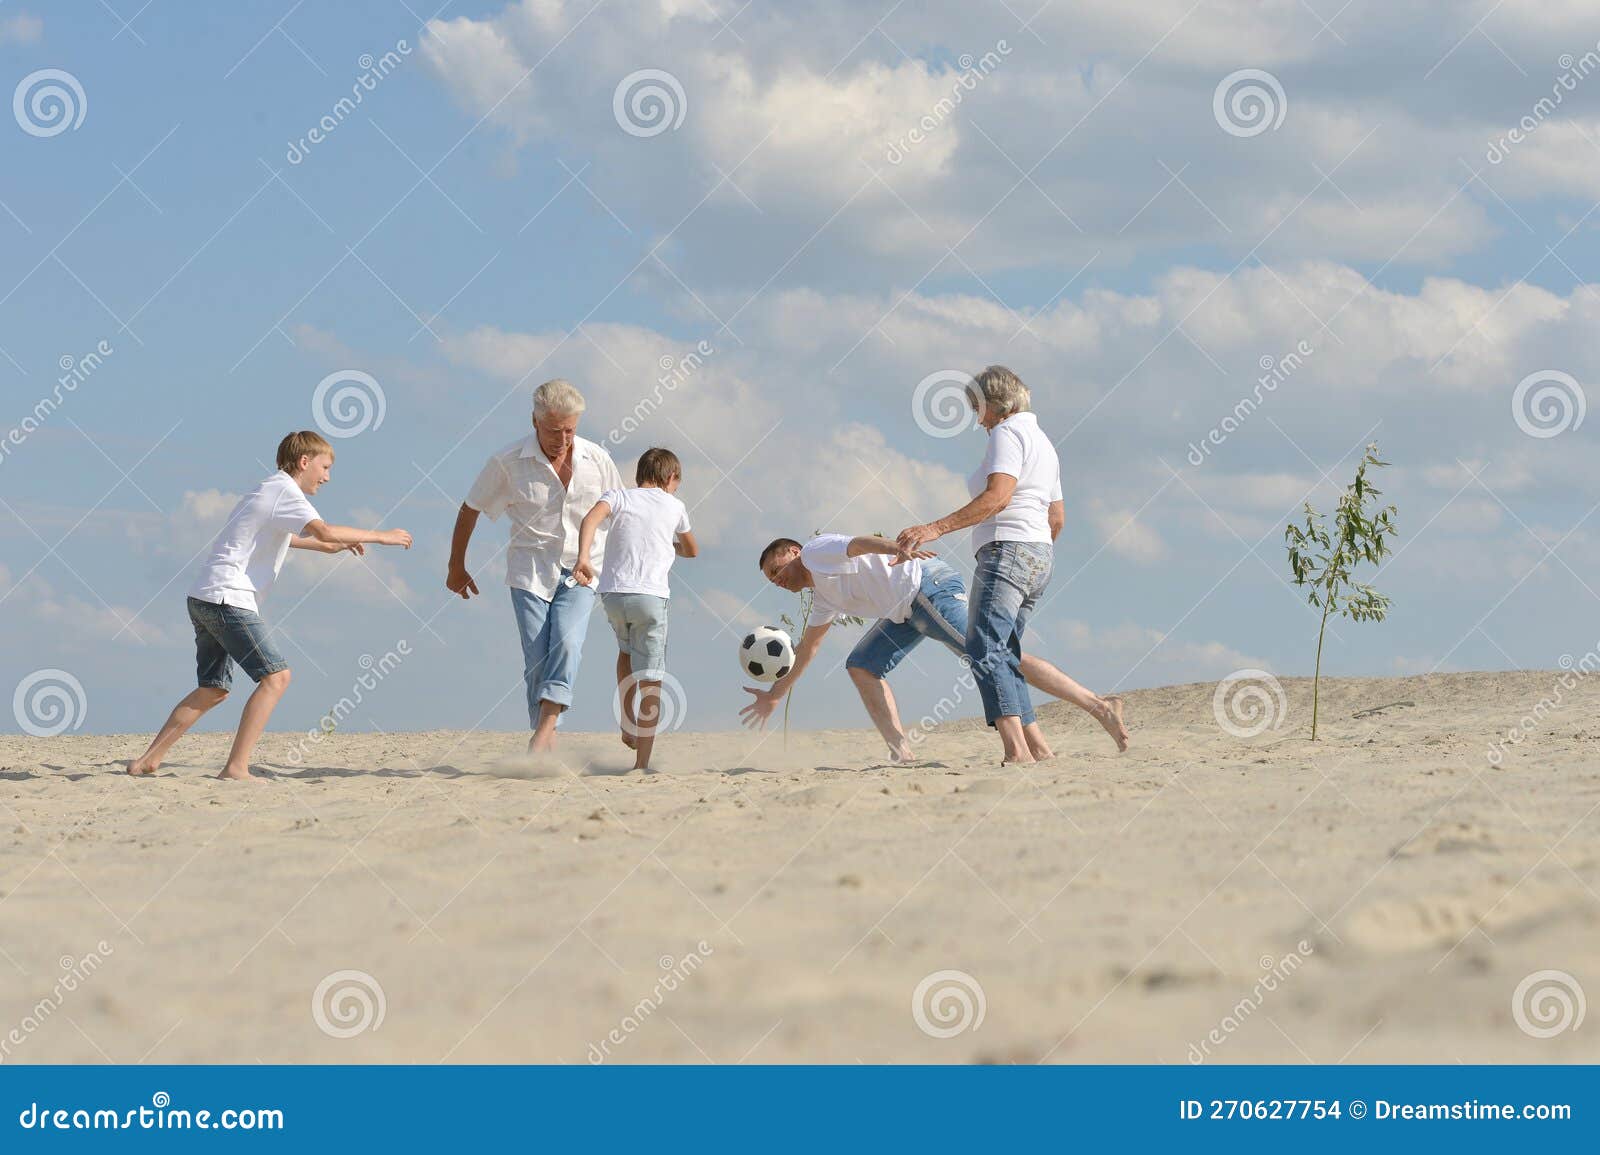 Voetbal op het strand in de zomerdag